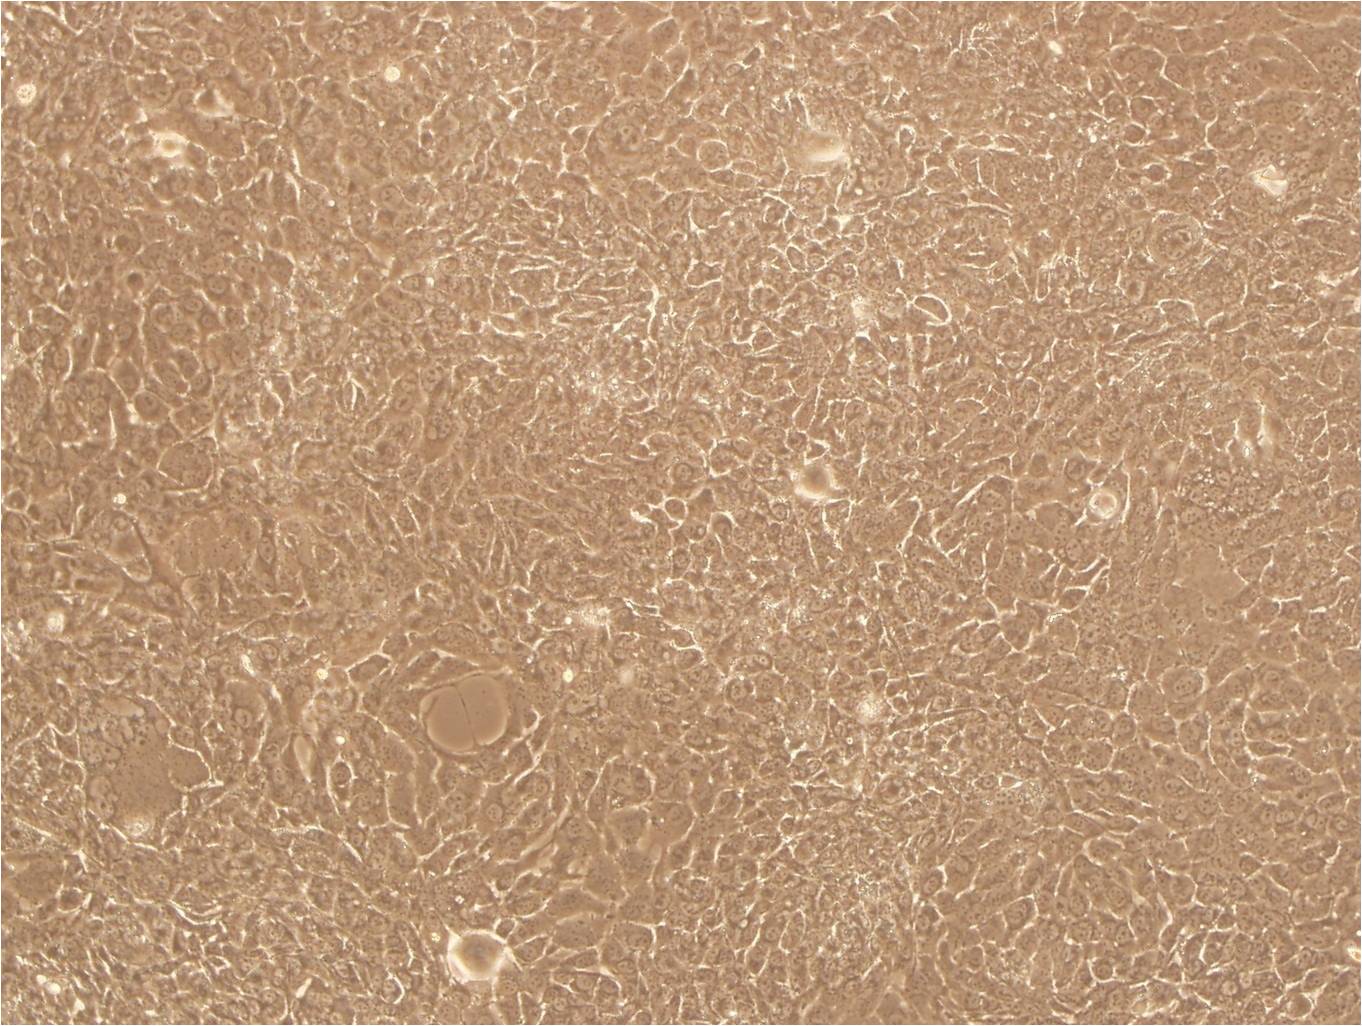 KB Cells|口腔表皮样癌可传代细胞系